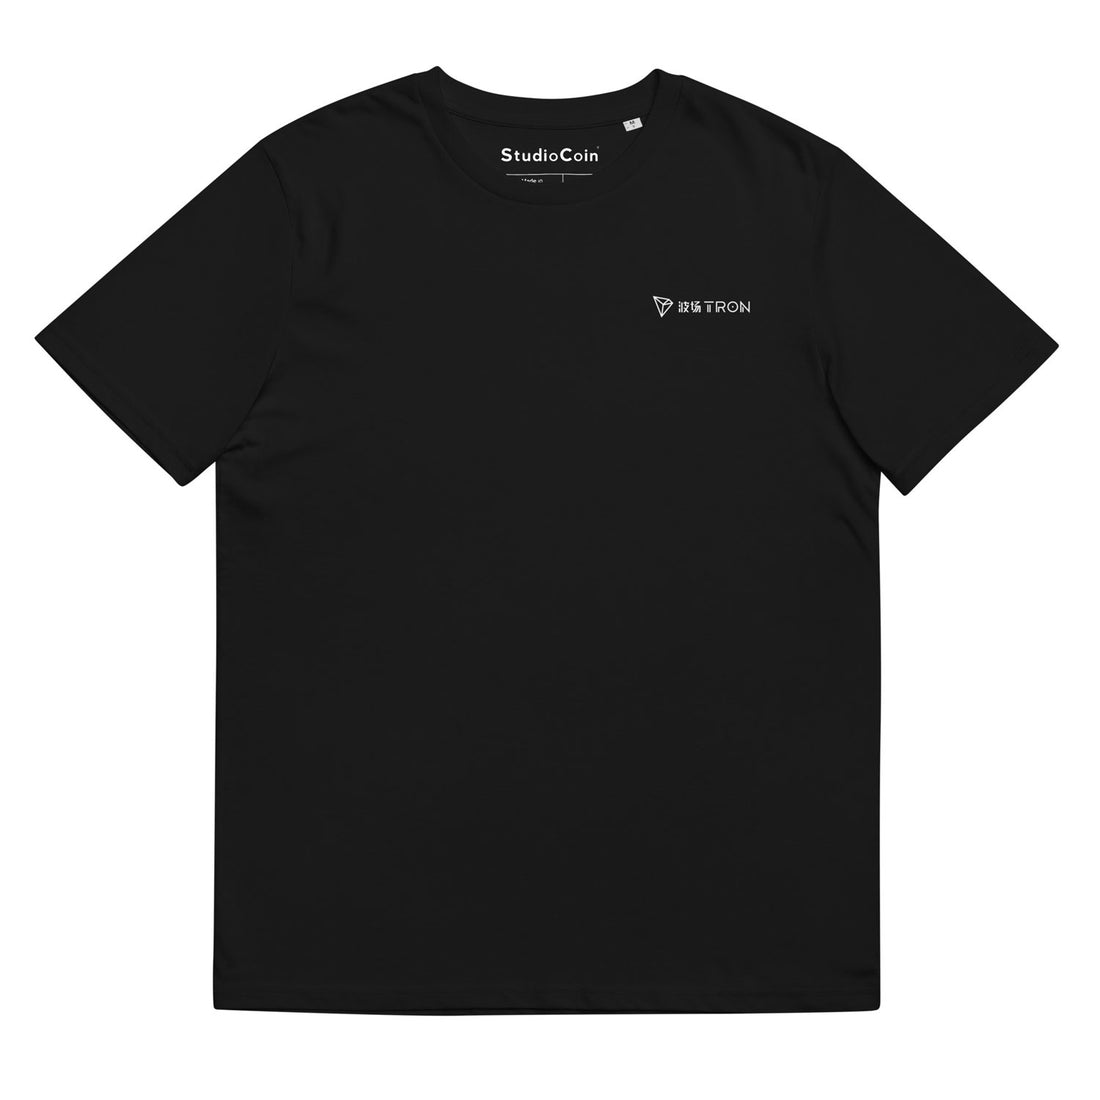 tron trx logo tshirt black 